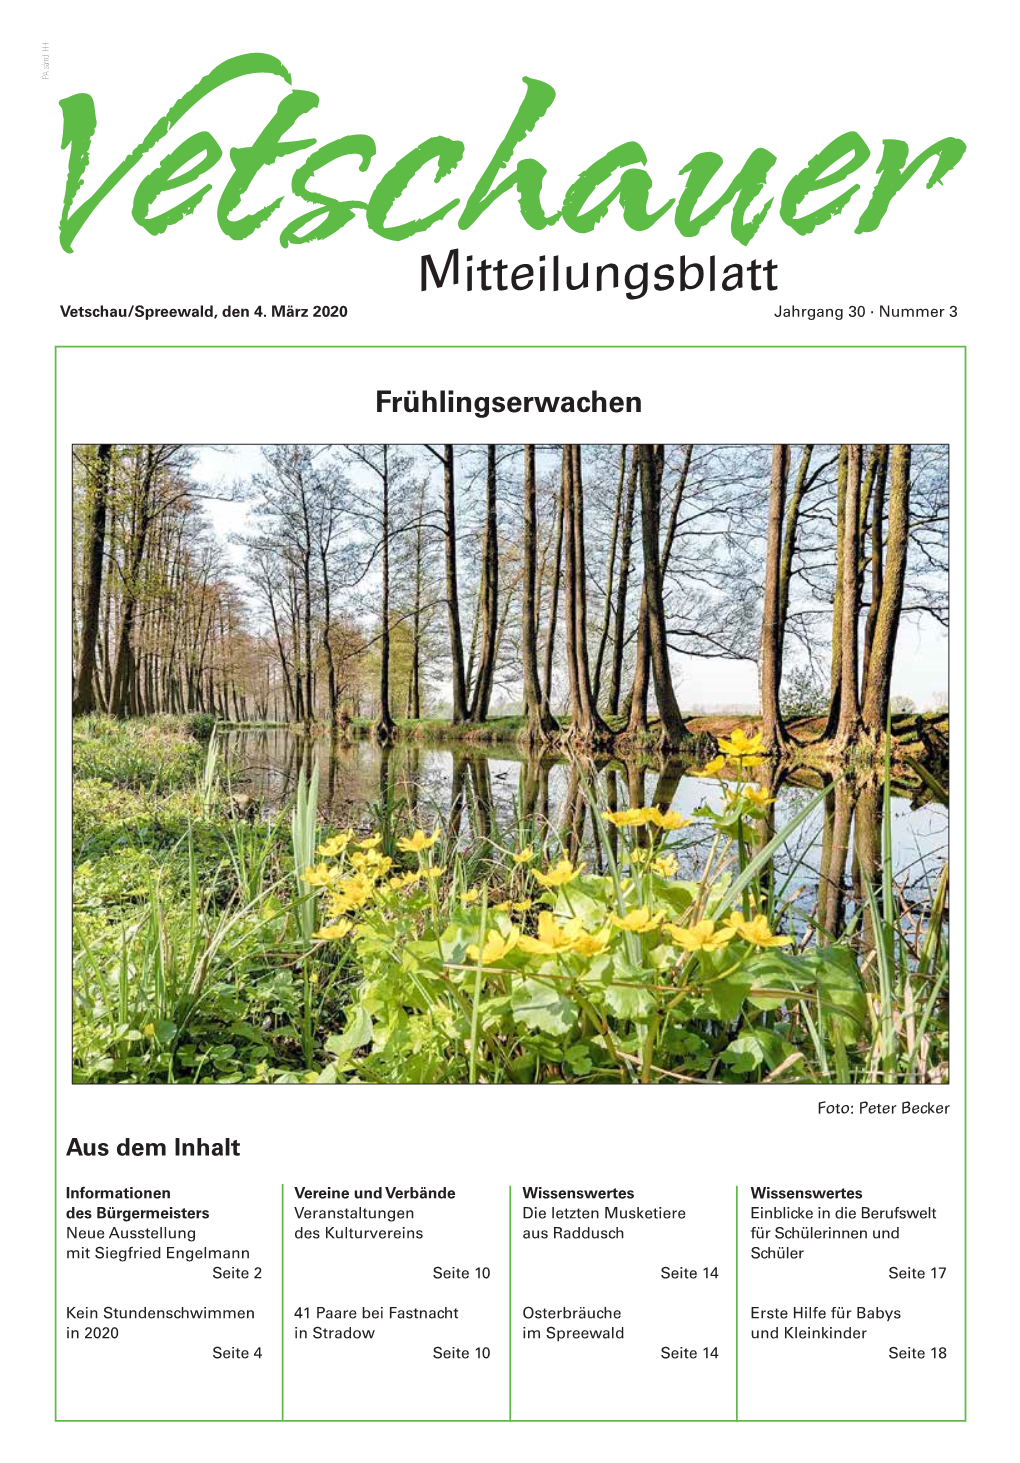 Mitteilungsblatt Vetschau/Spreewald, Den 4